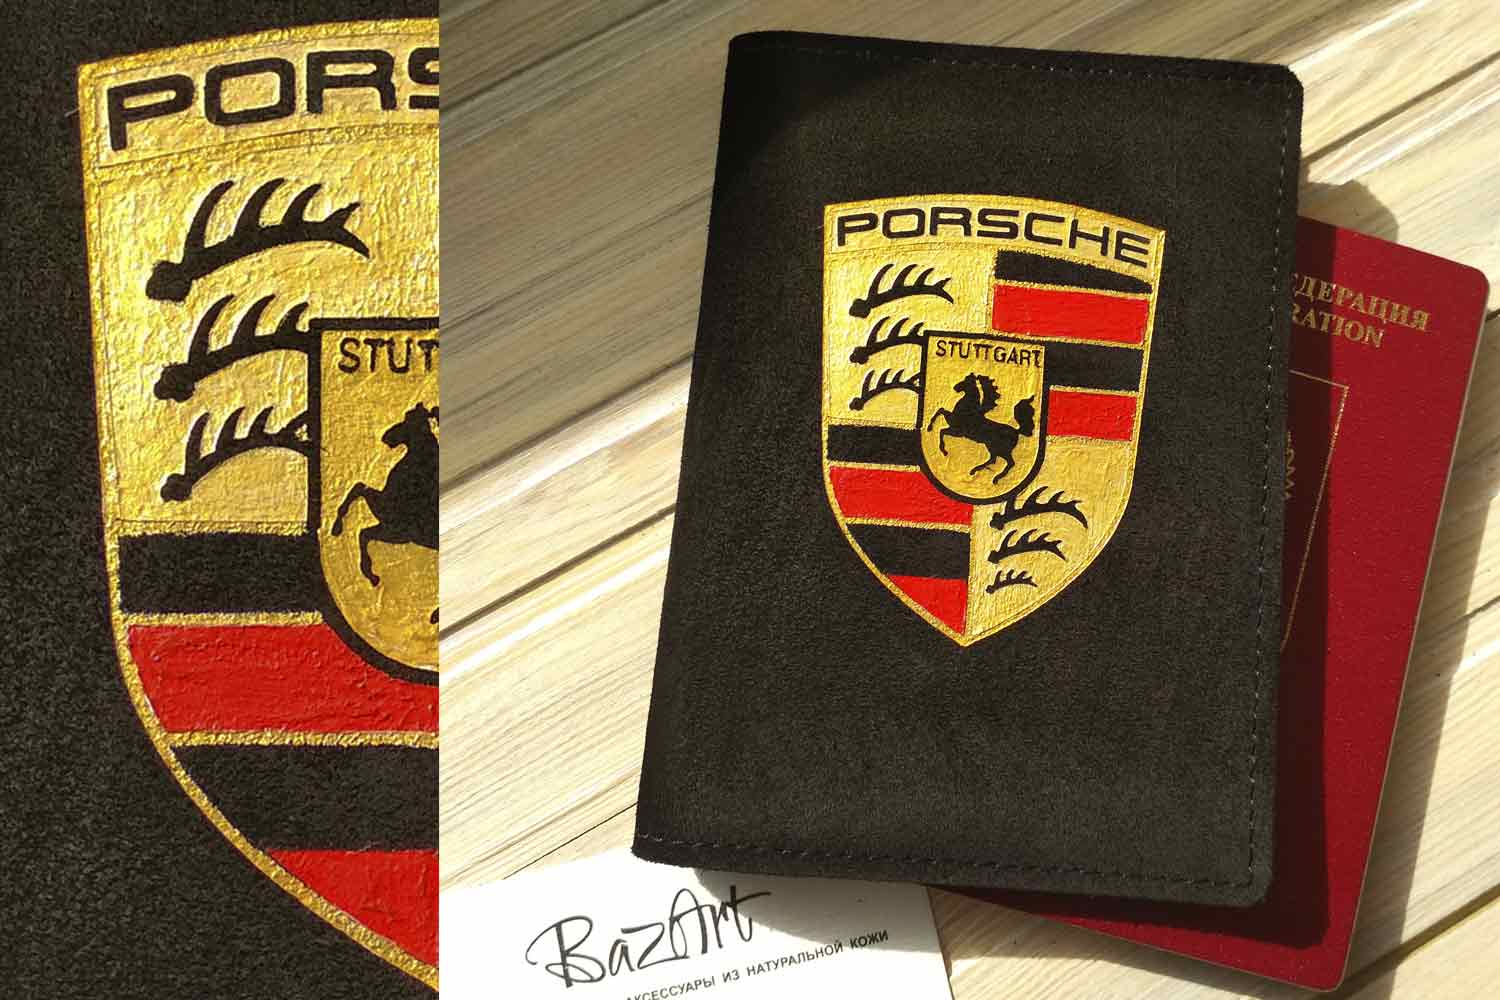 Базарт - Обложка на документы Porsche